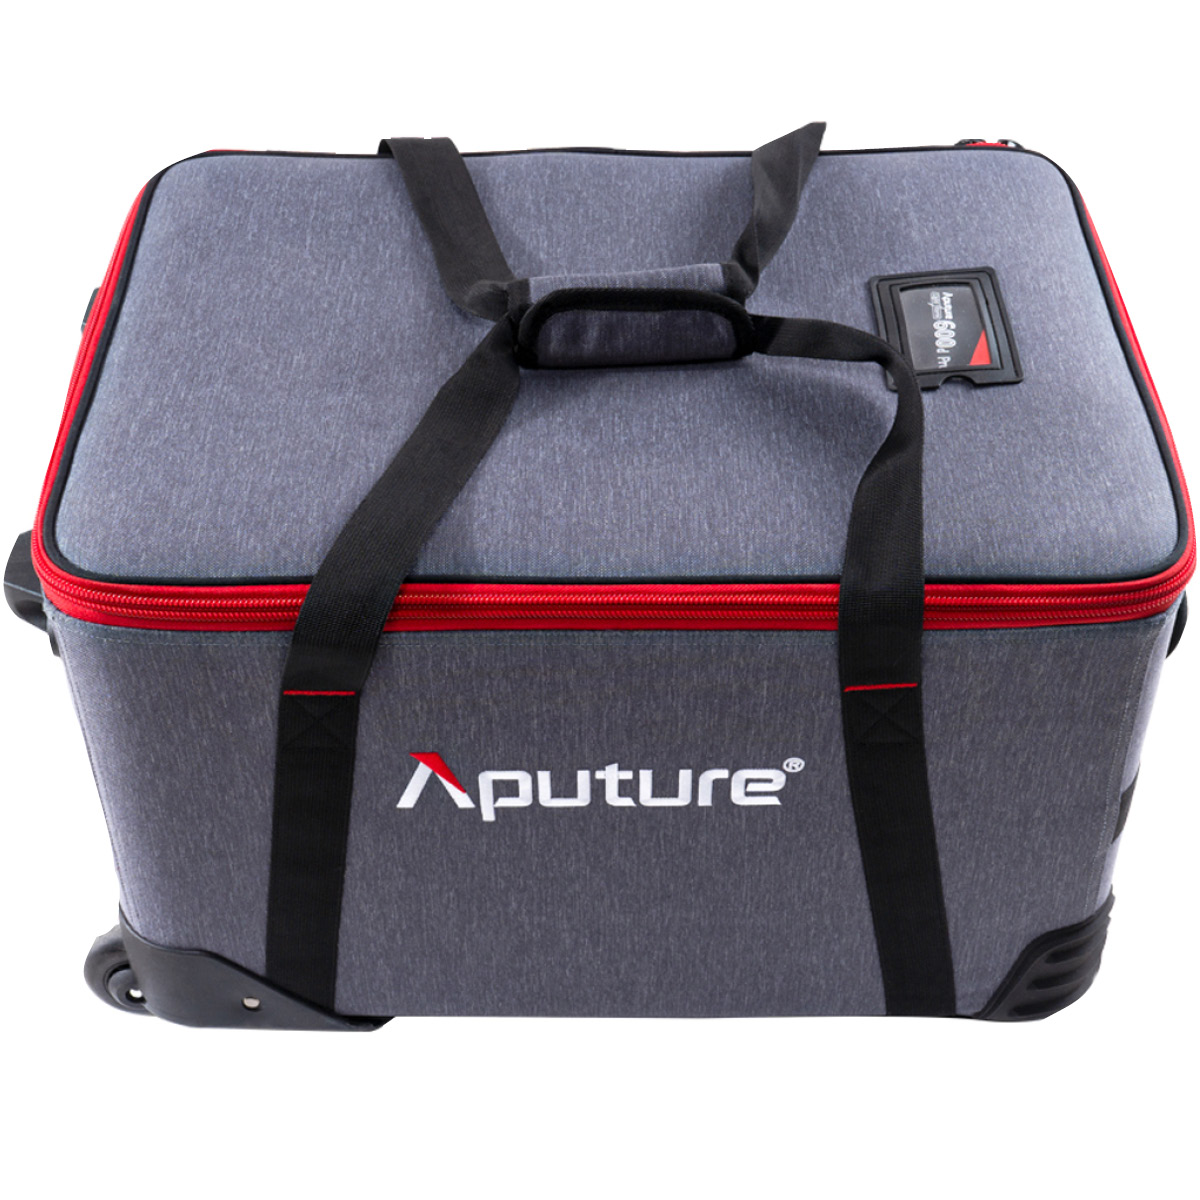 Aputure Light Storm 600d Pro Kit